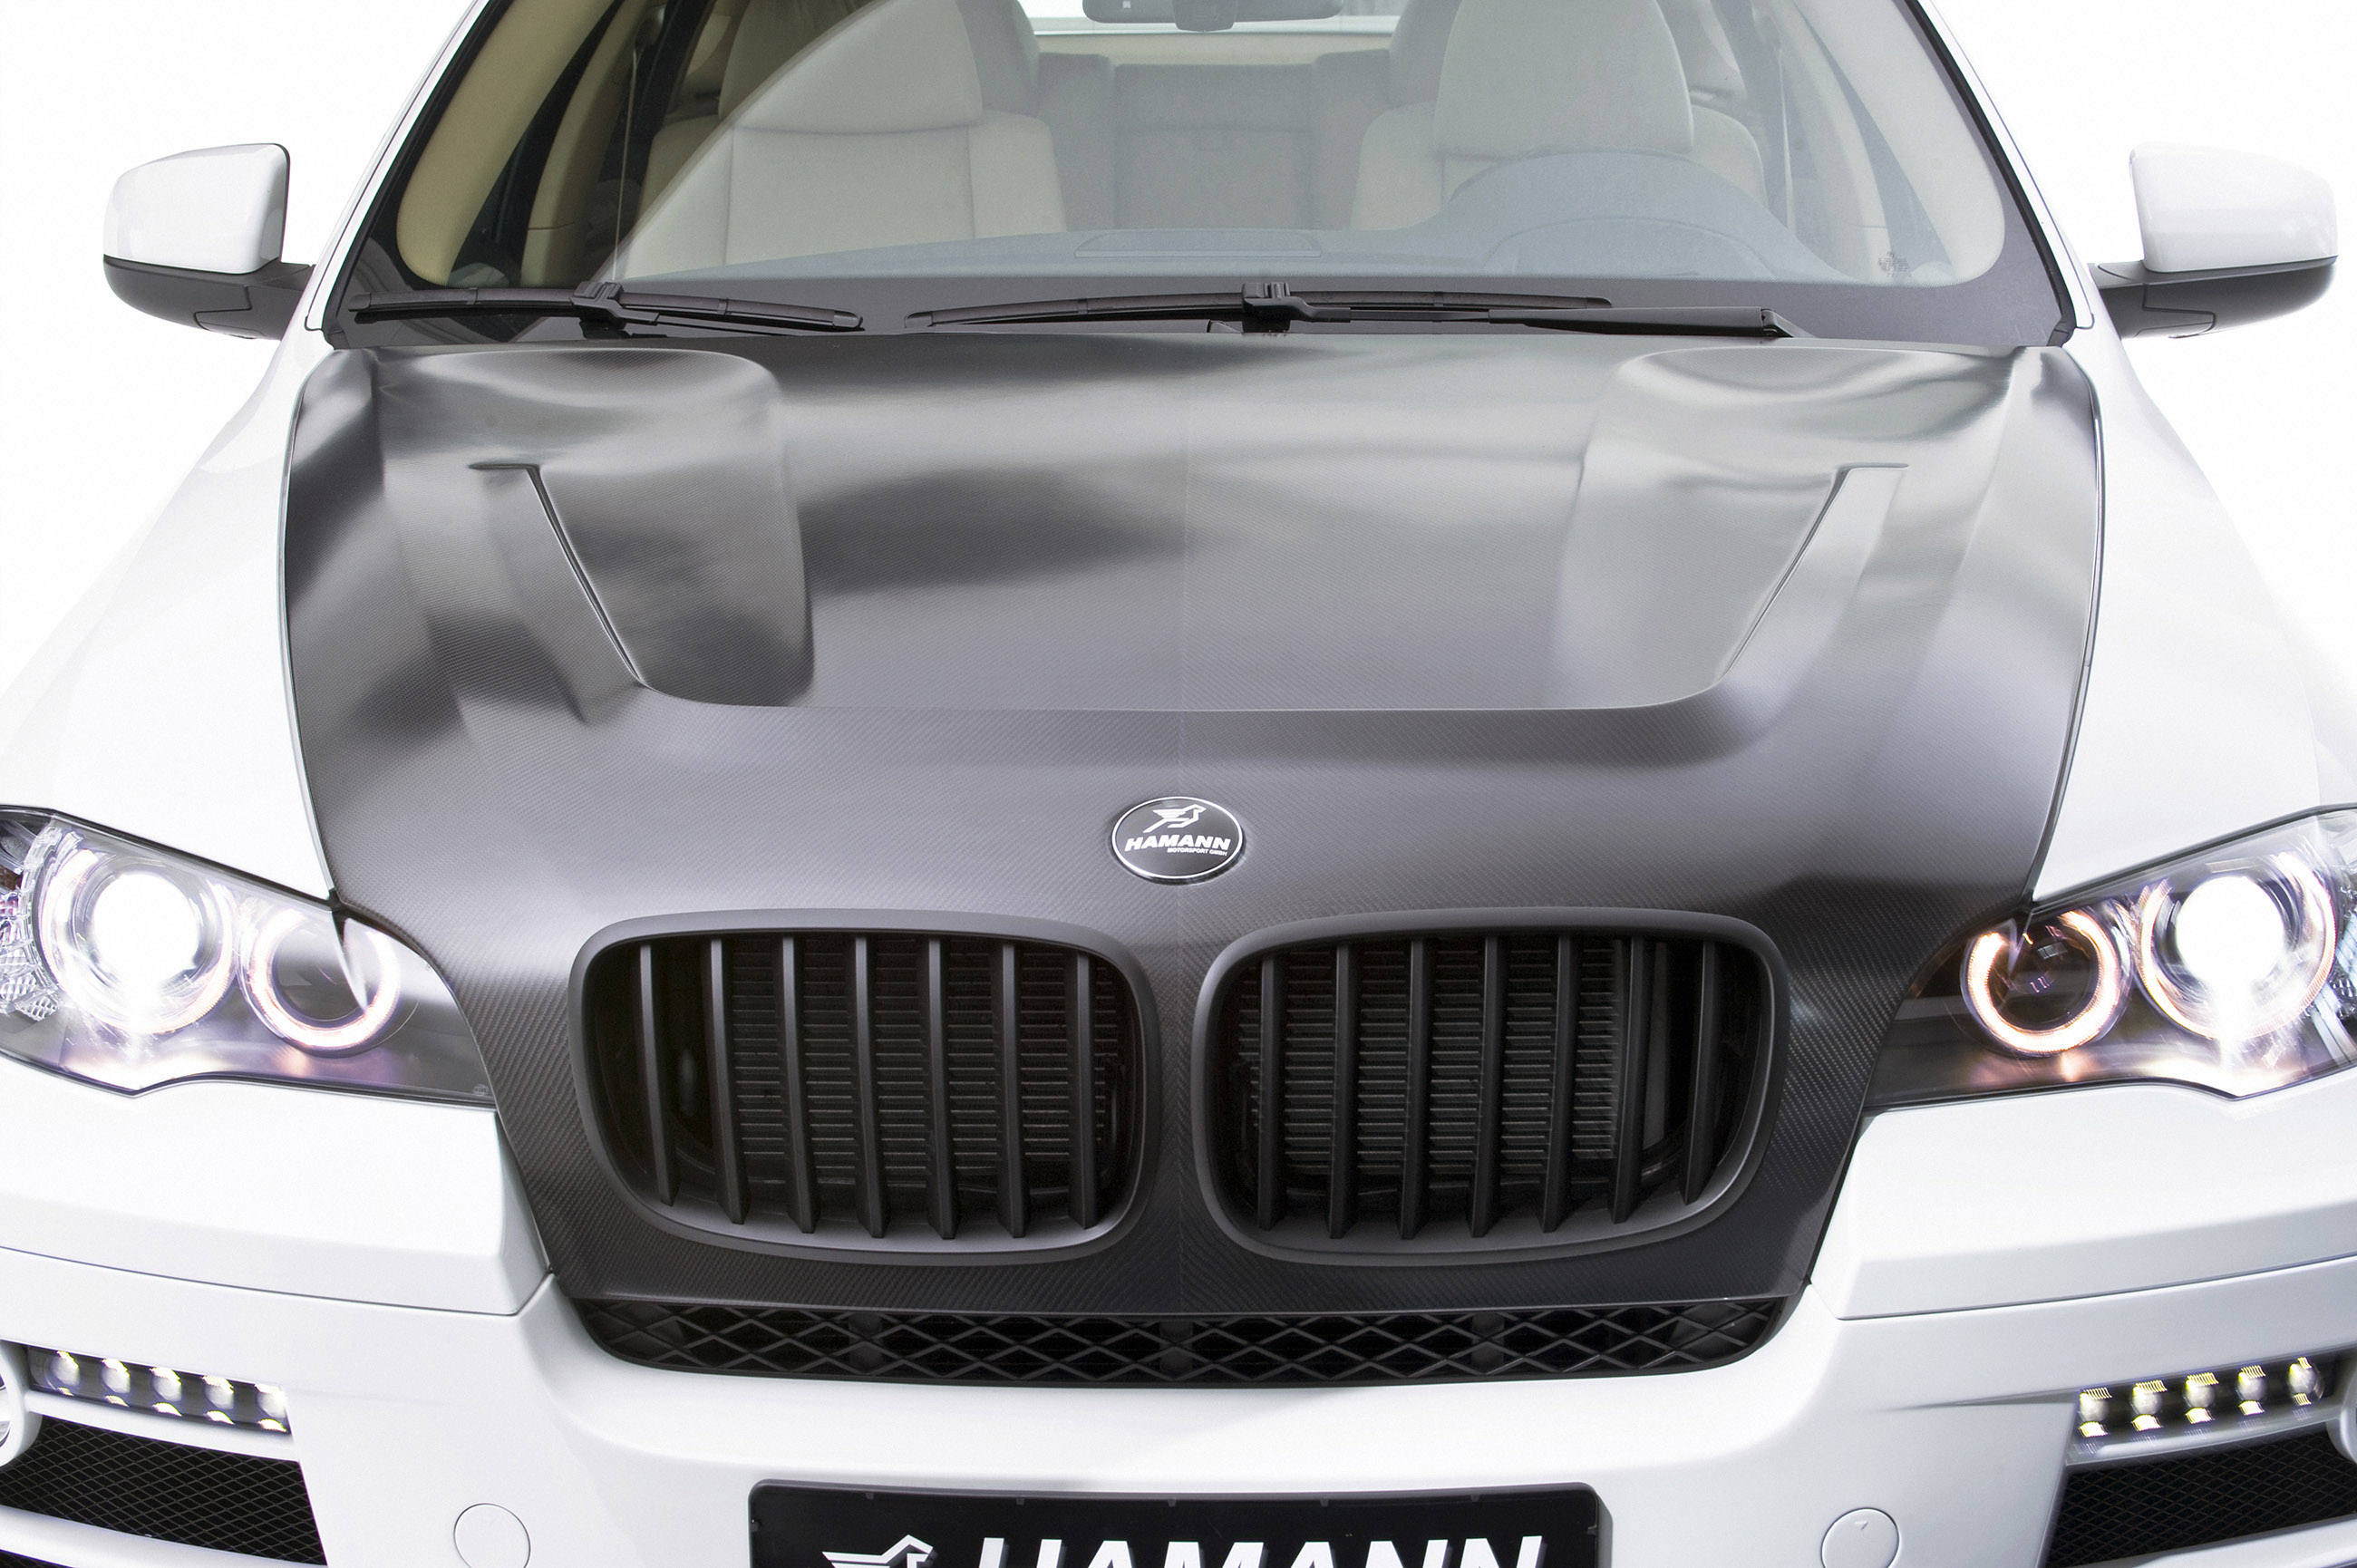 Bmw x5 капот. Капот BMW x6 e71 Hamann. BMW x6 Carbon капот. Капот карбон BMW x6 e71 Hamann. Карбоновый капот на БМВ х5.